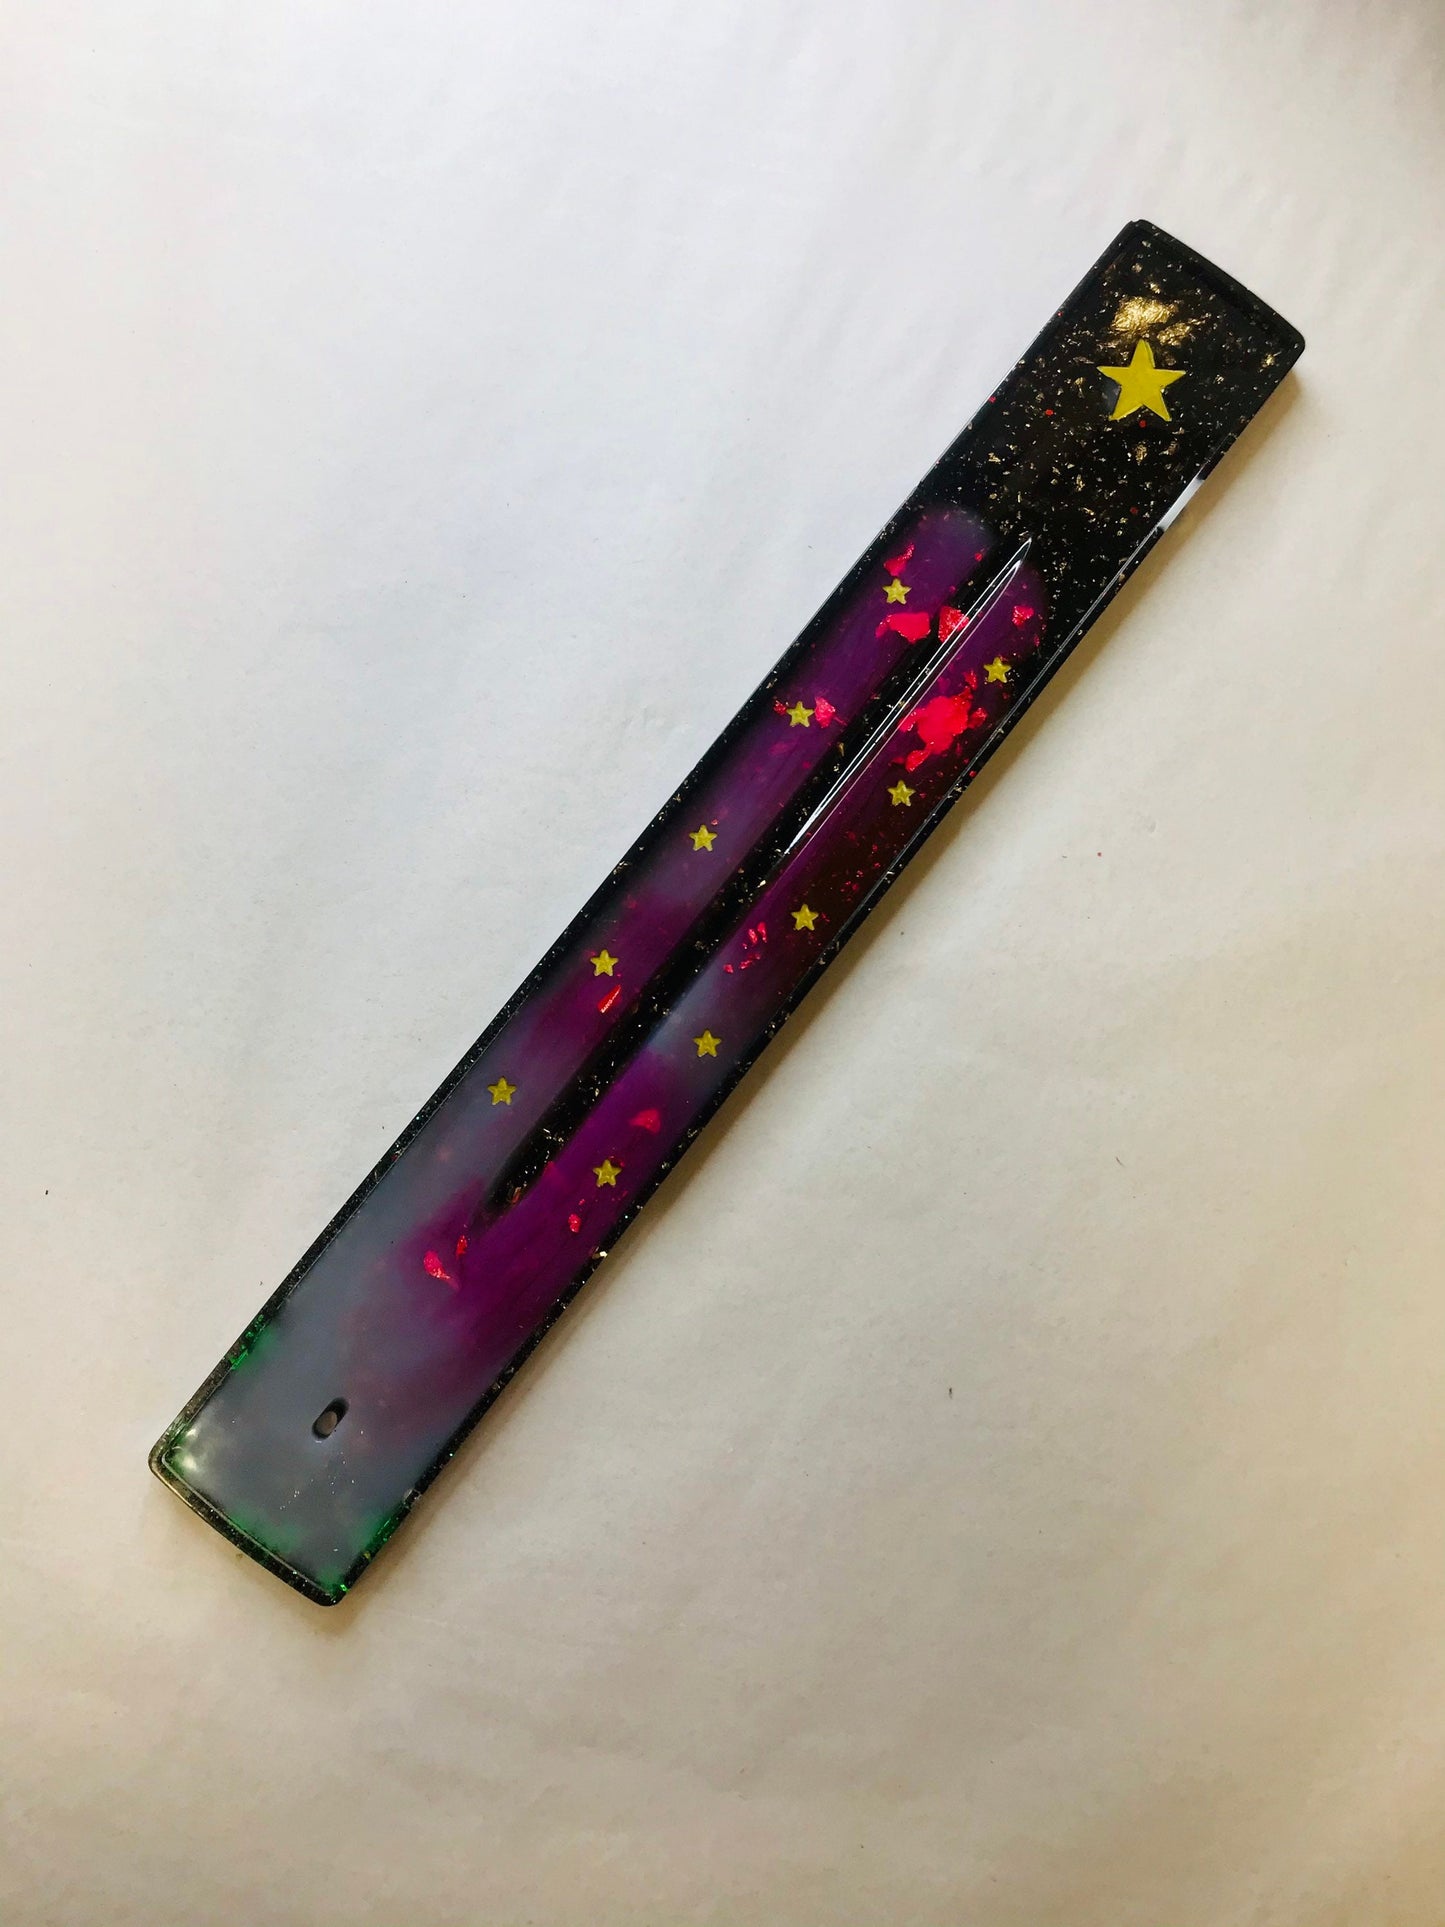 Incense Stick Burner, Resin Stick Burner, Marijuana Leaves, Black and Gold Stars - Made to Order